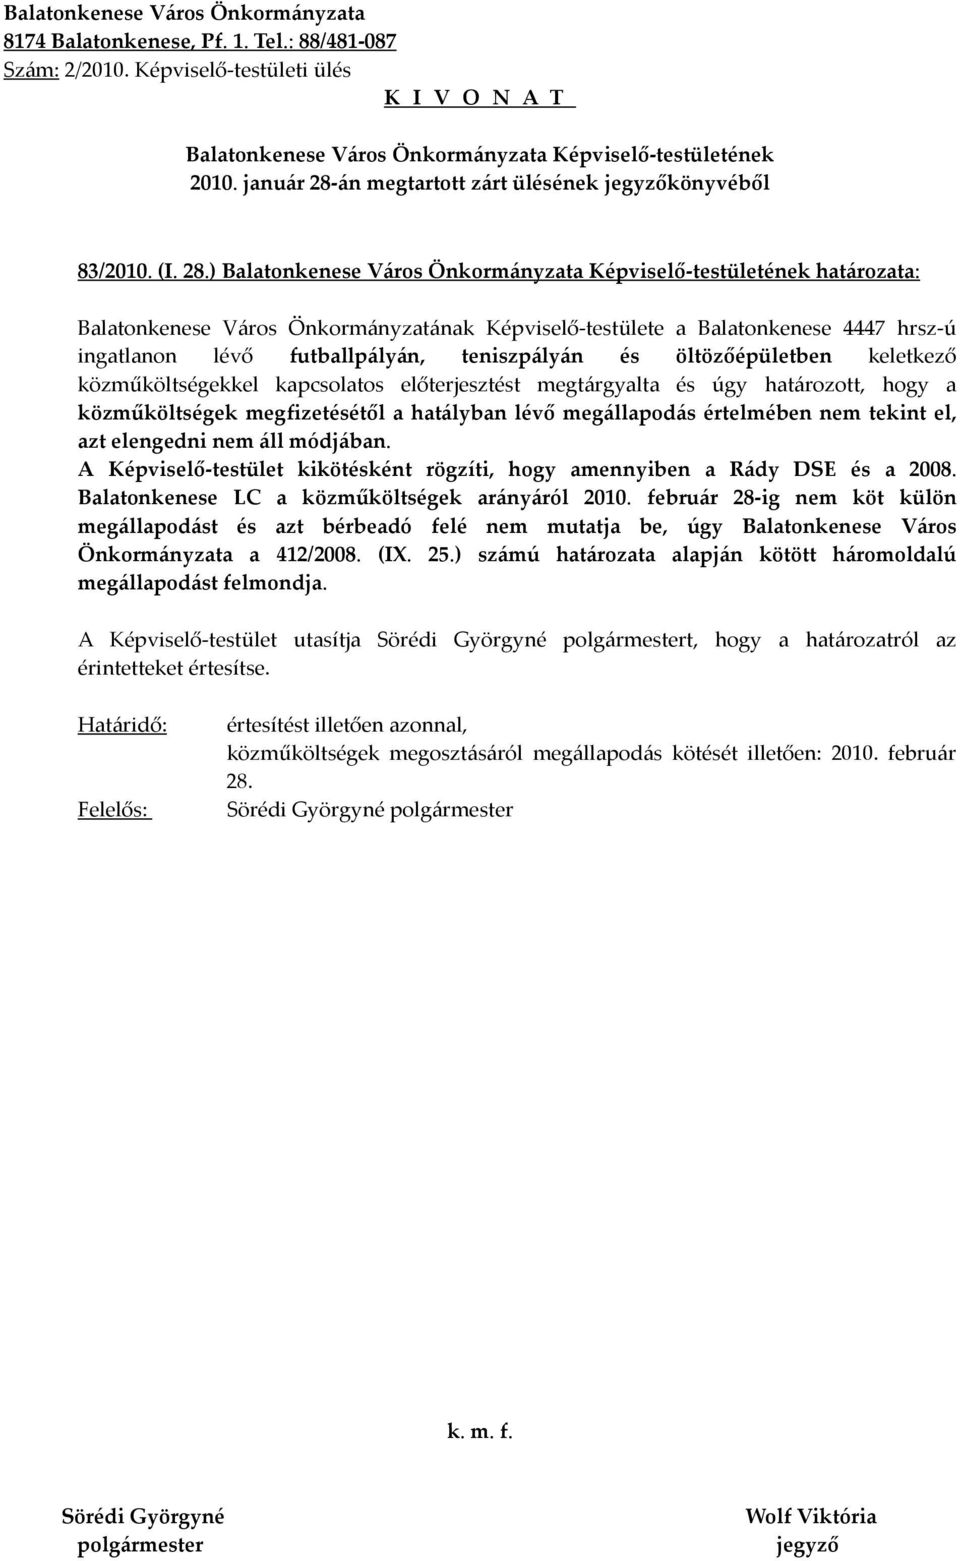 ) határozata: Balatonkenese Város Önkormányzatának Képviselő-testülete a Balatonkenese 4447 hrsz-ú ingatlanon lévő futballpályán, teniszpályán és öltözőépületben keletkező közműköltségekkel